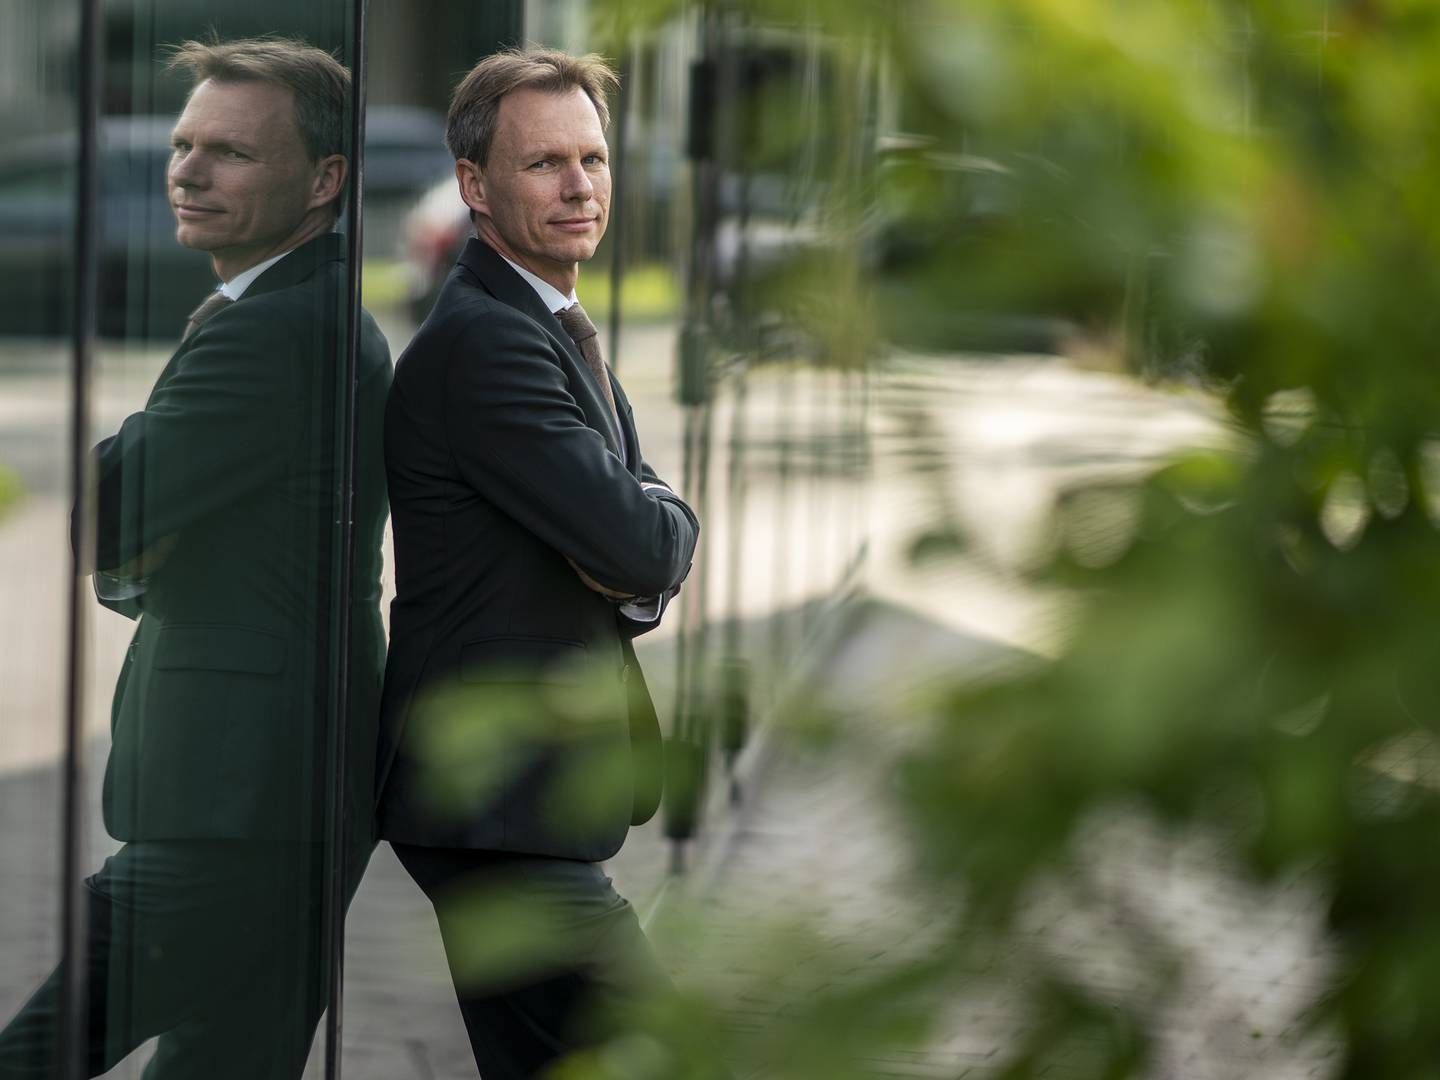 Adm. direktør i F&P, Kent Damsgaard, håber at poltikerne tør tage hul på en prioriteringsdiskussion under en kommende valgkamp. | Foto: Stine Bidstrup/ERH